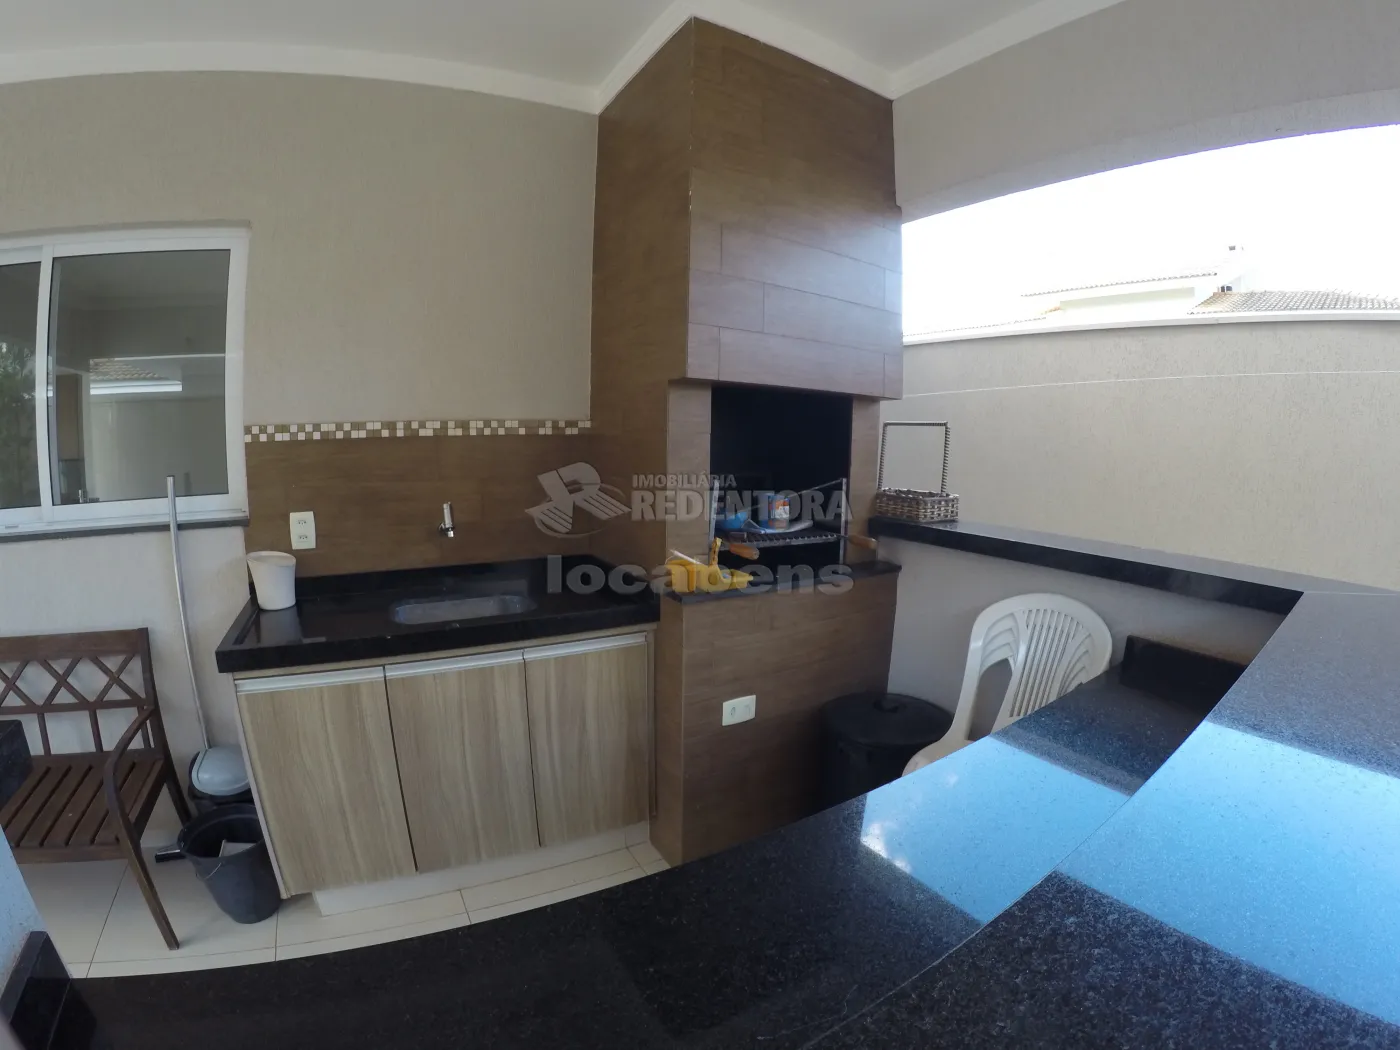 Comprar Casa / Condomínio em Mirassol apenas R$ 900.000,00 - Foto 30